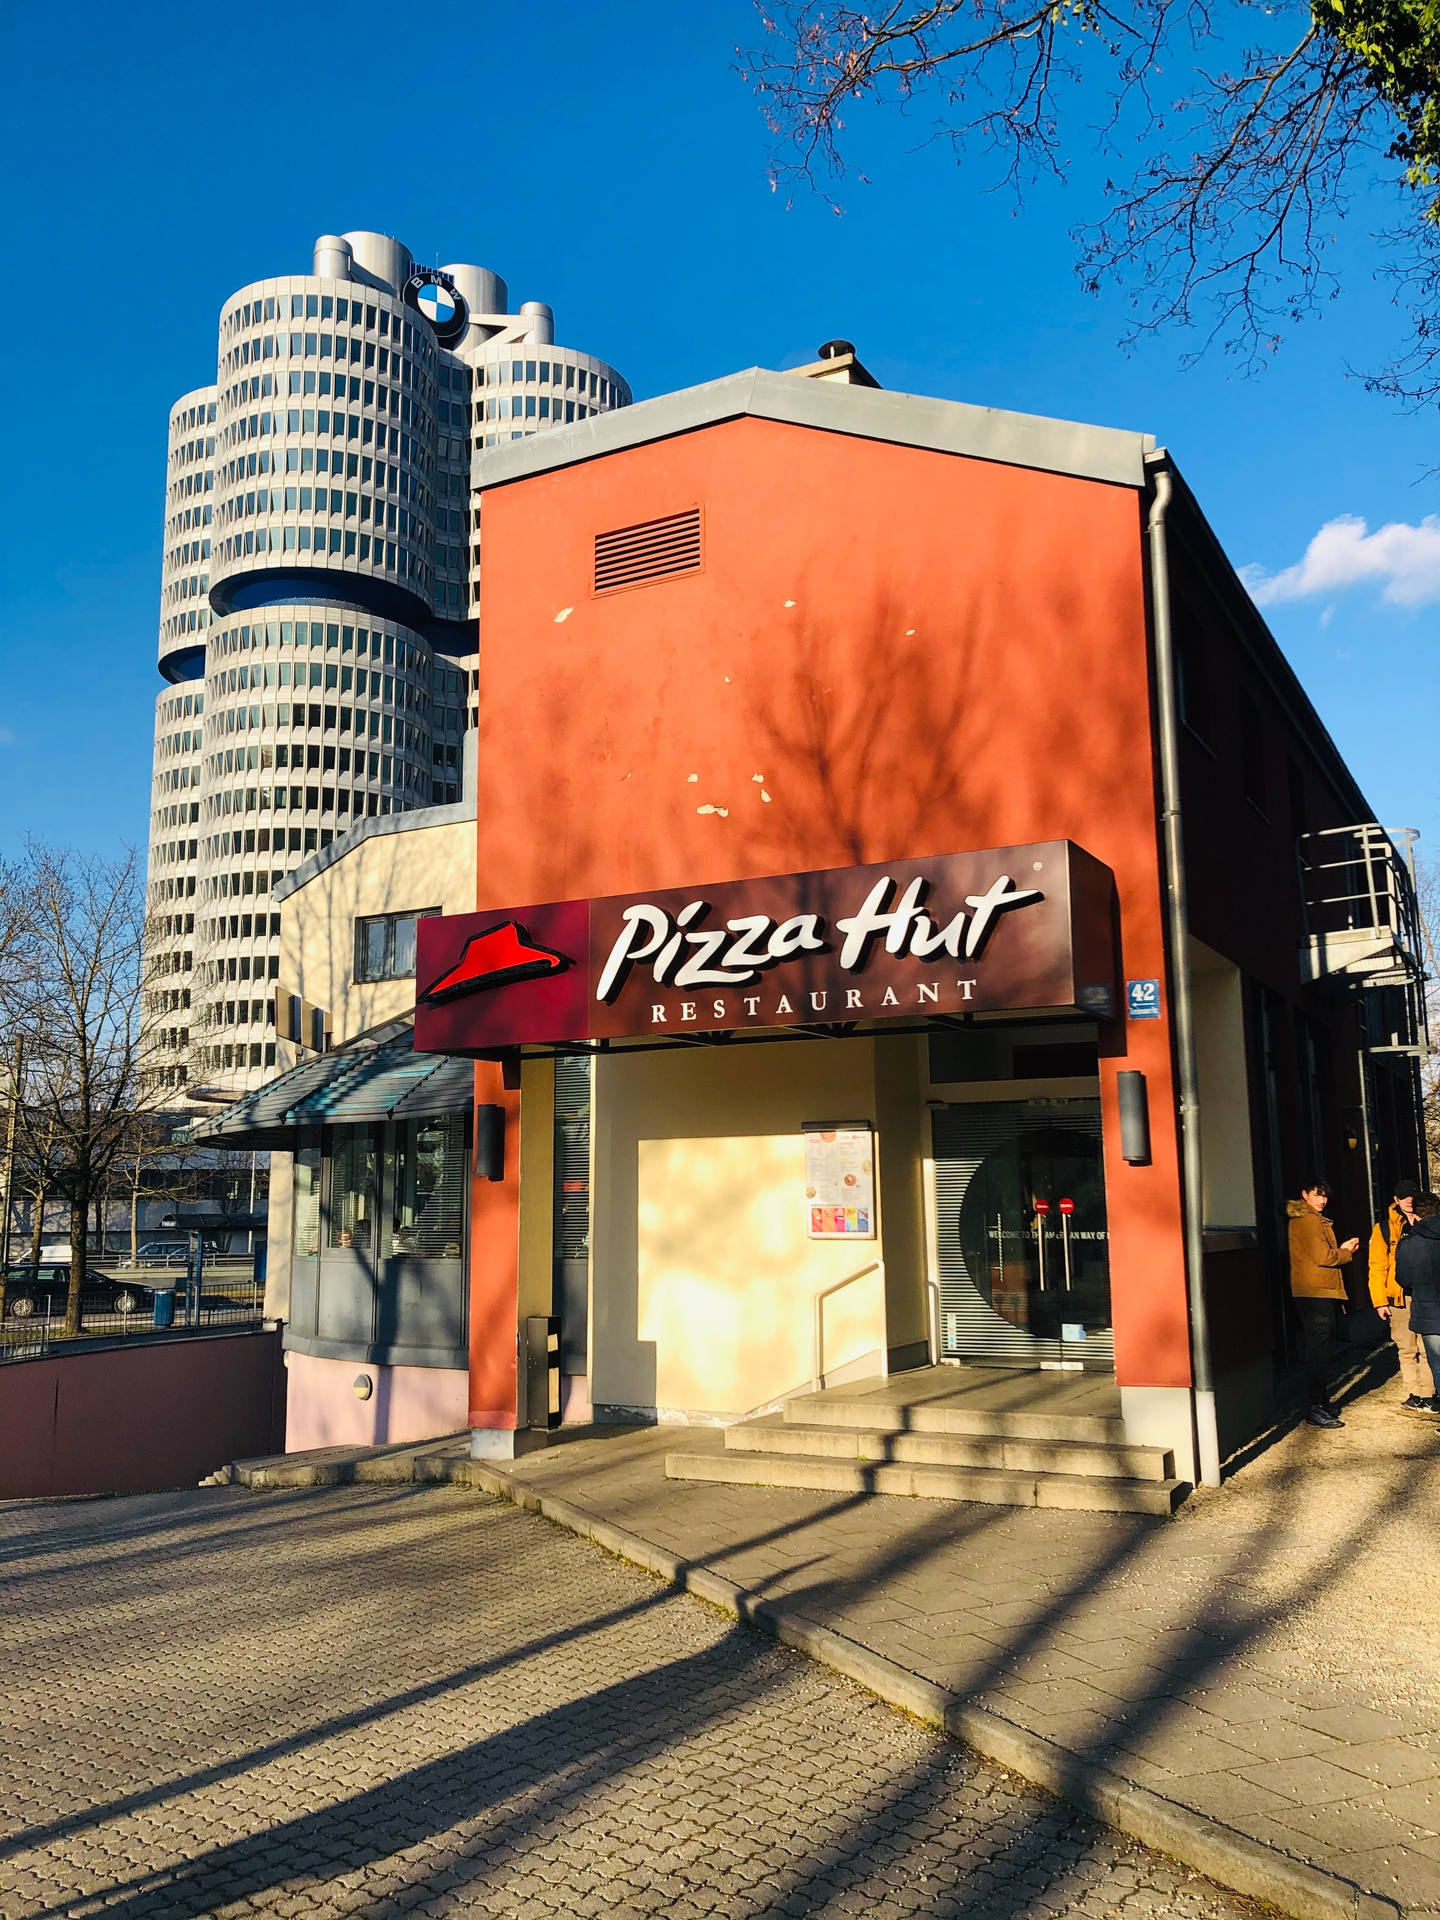 Pizza Hut Restaurant Facade Background